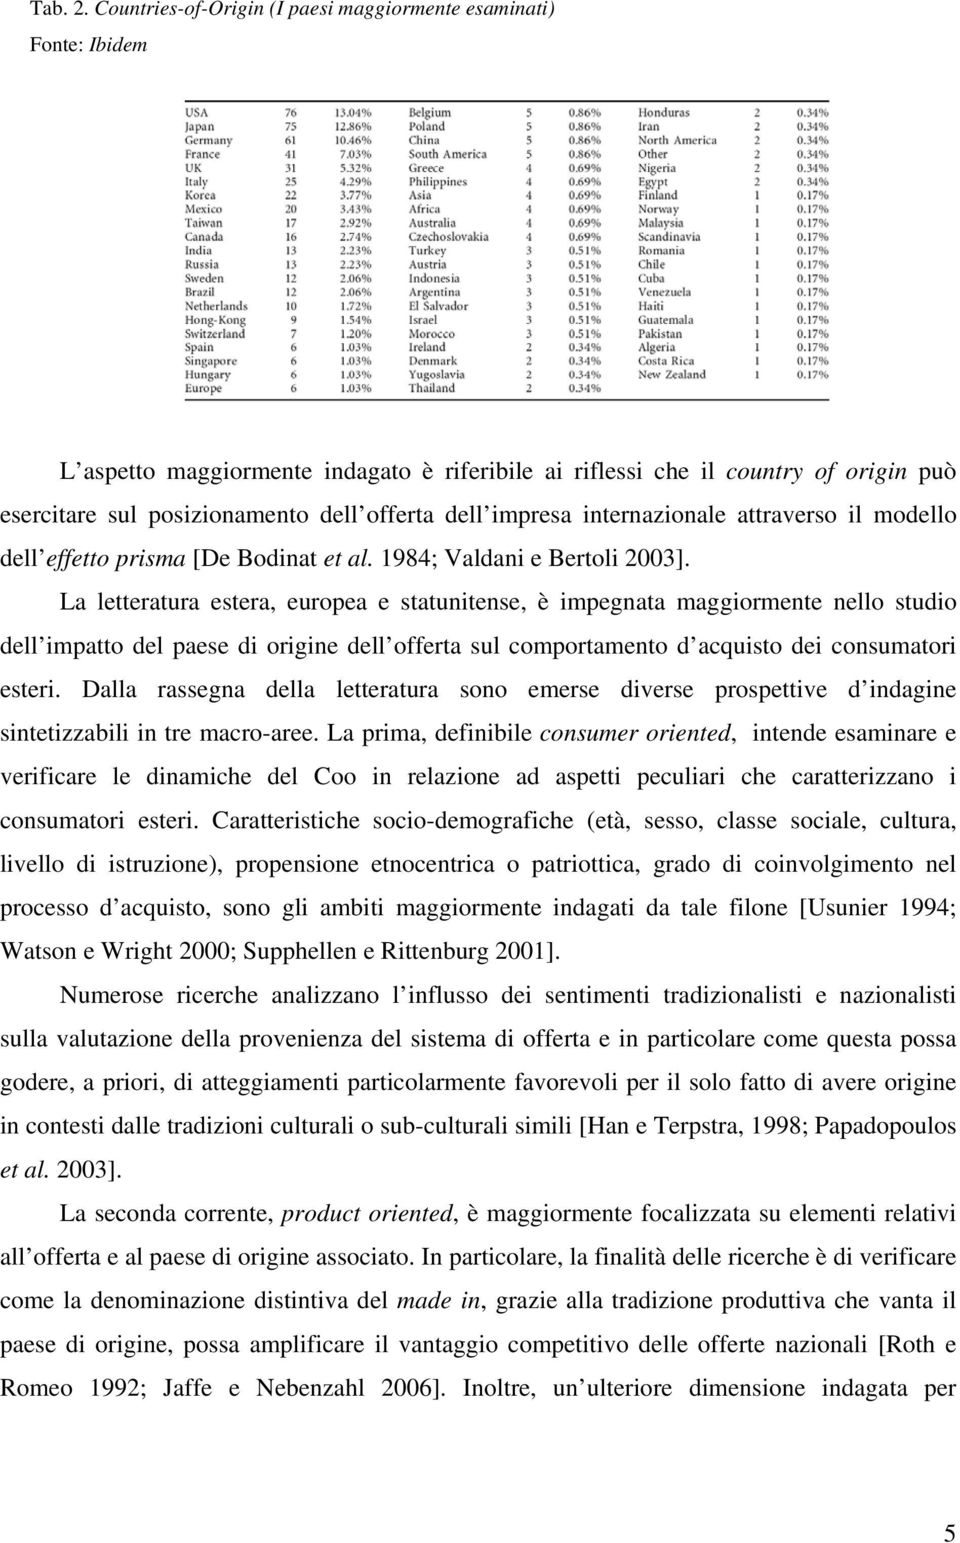 dell impresa internazionale attraverso il modello dell effetto prisma [De Bodinat et al. 1984; Valdani e Bertoli 2003].